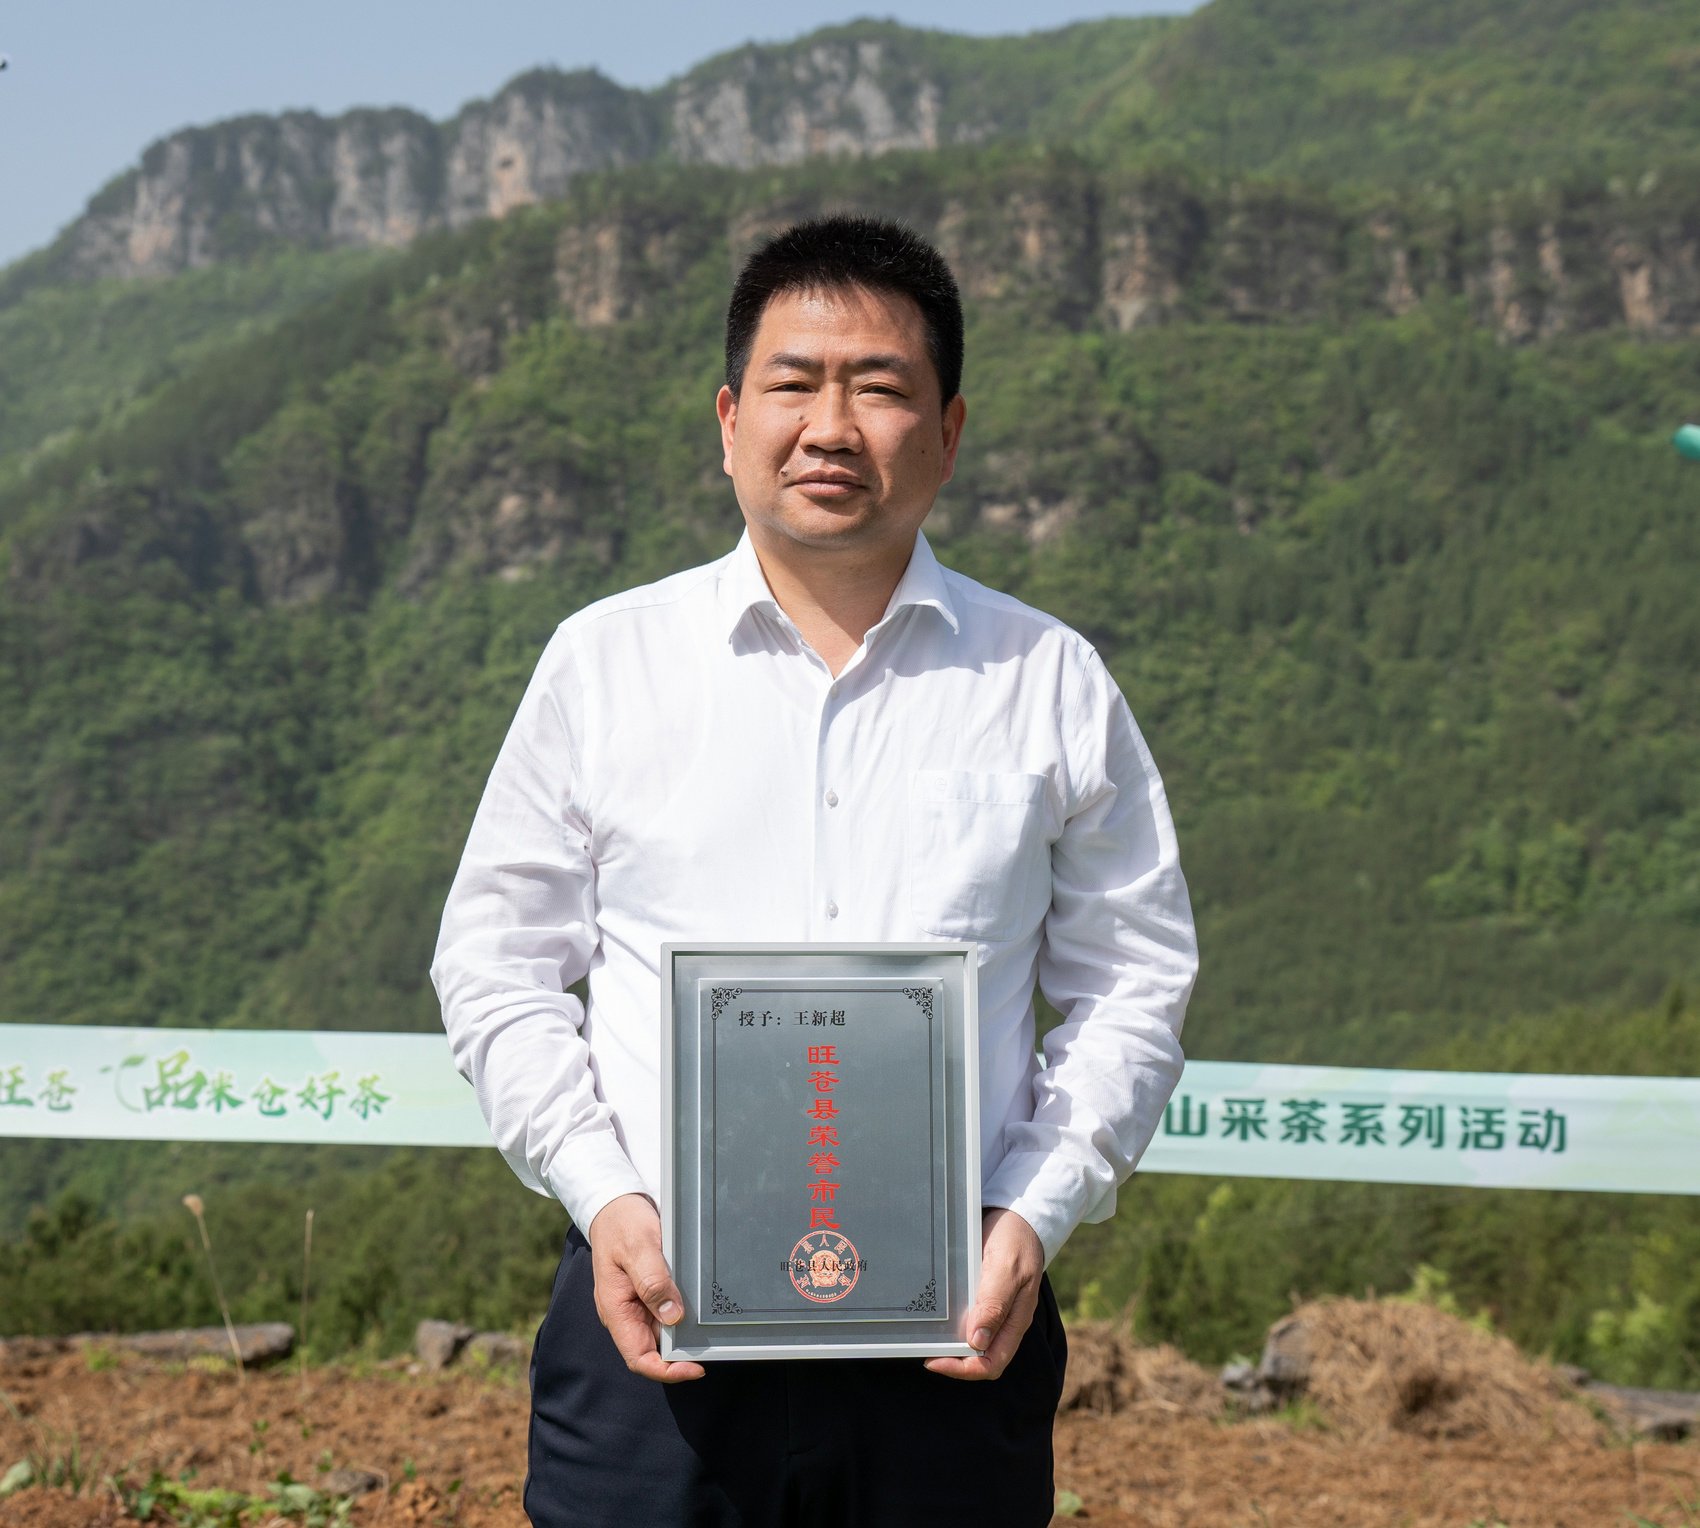 旺苍县“荣誉市民”、中国农业科学院茶叶研究所副所长王新超。陈加普 摄